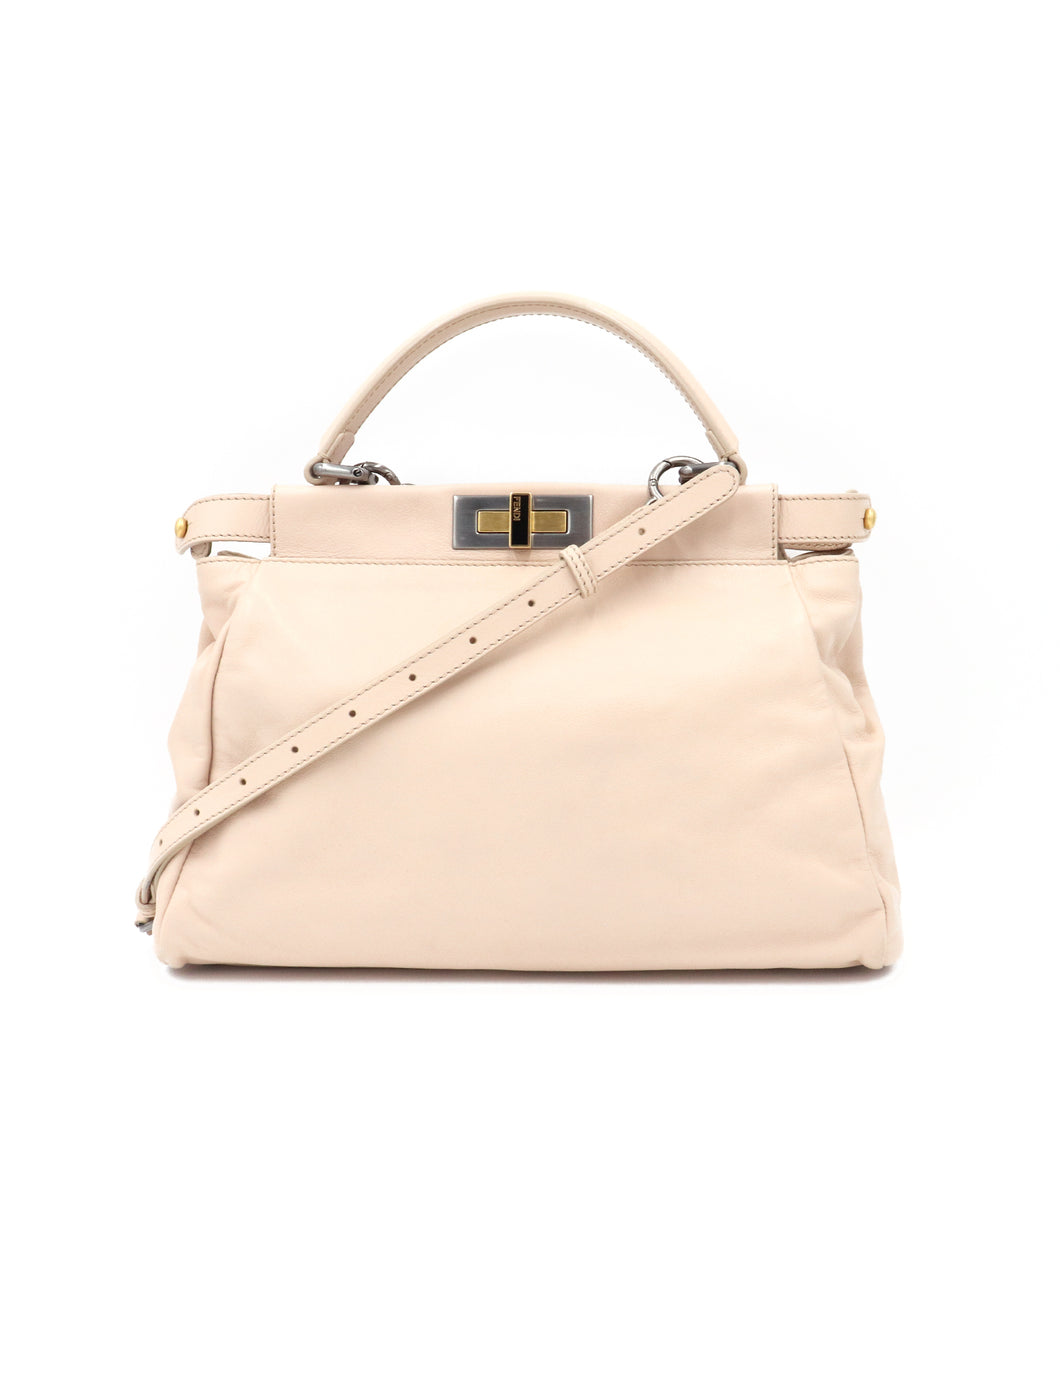 Fendi Leather Medium Peekaboo Handbag